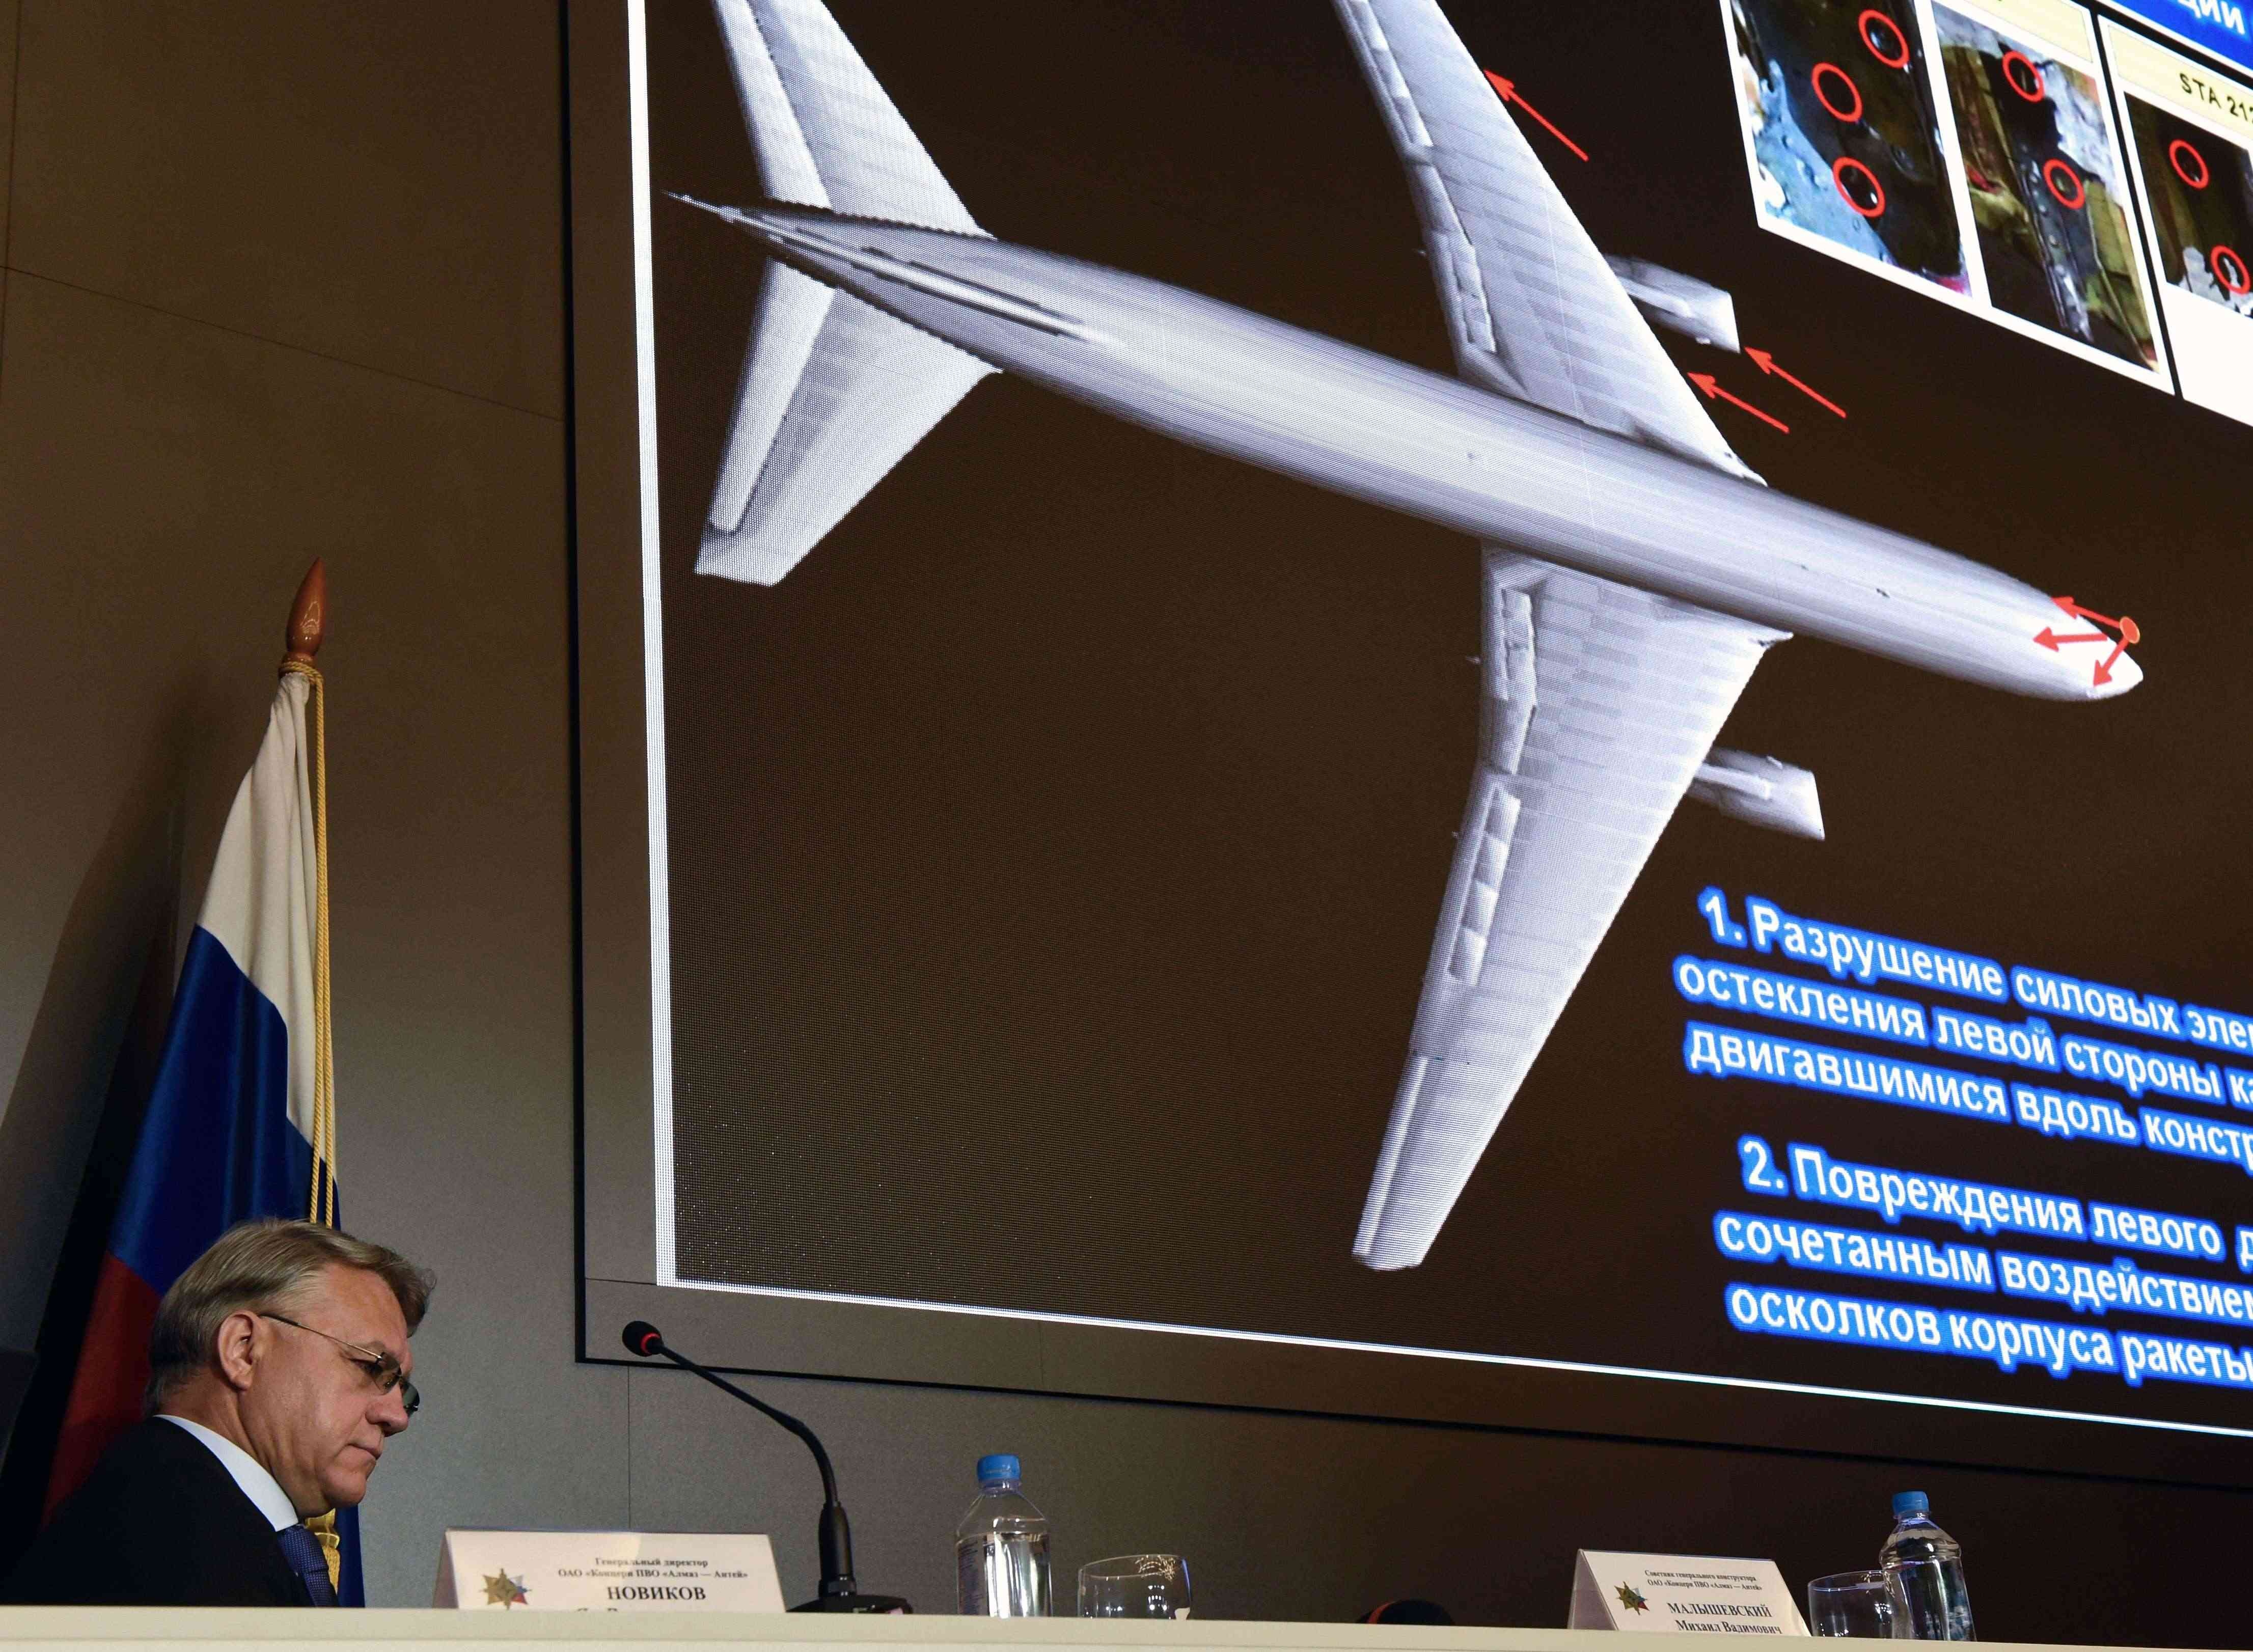  Vuelo MH17 fue abatido por misil ruso, confirman investigadores